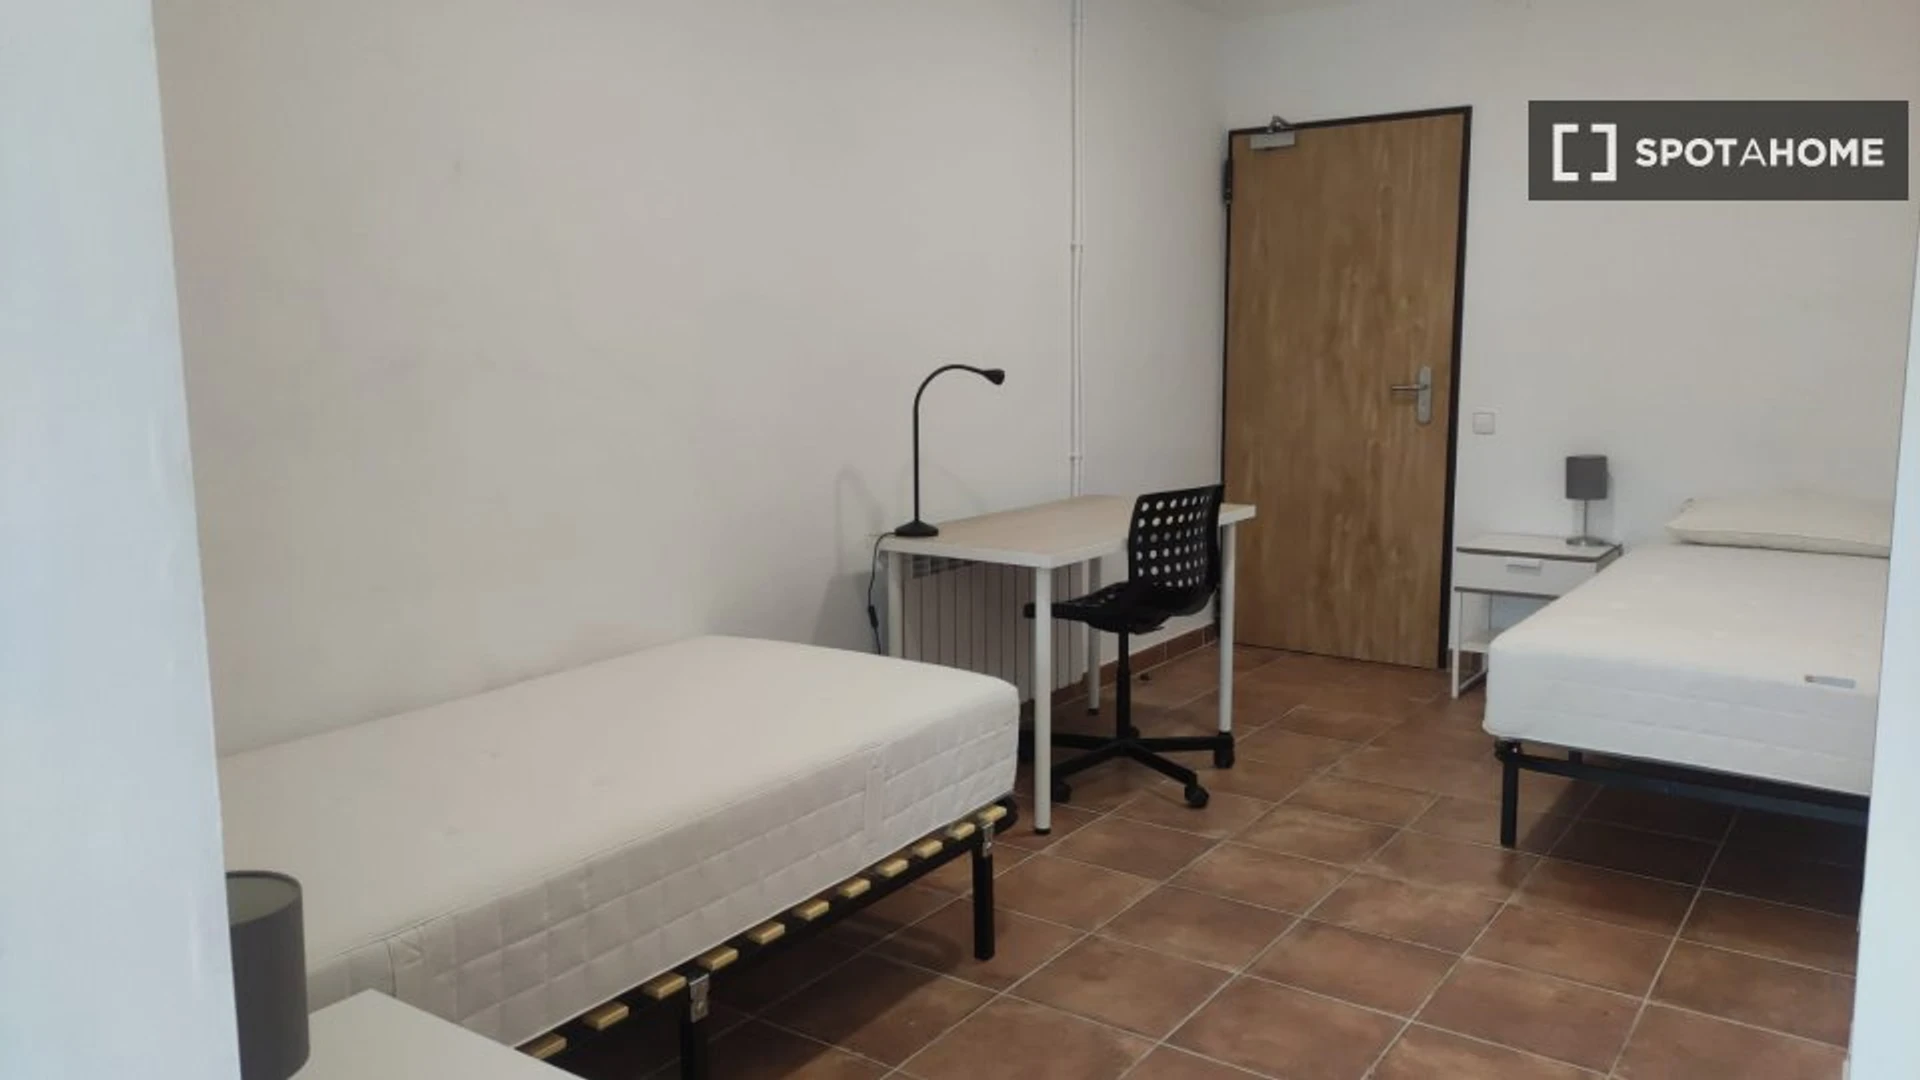 Alquiler de habitación en piso compartido en Cerdanyola Del Vallès